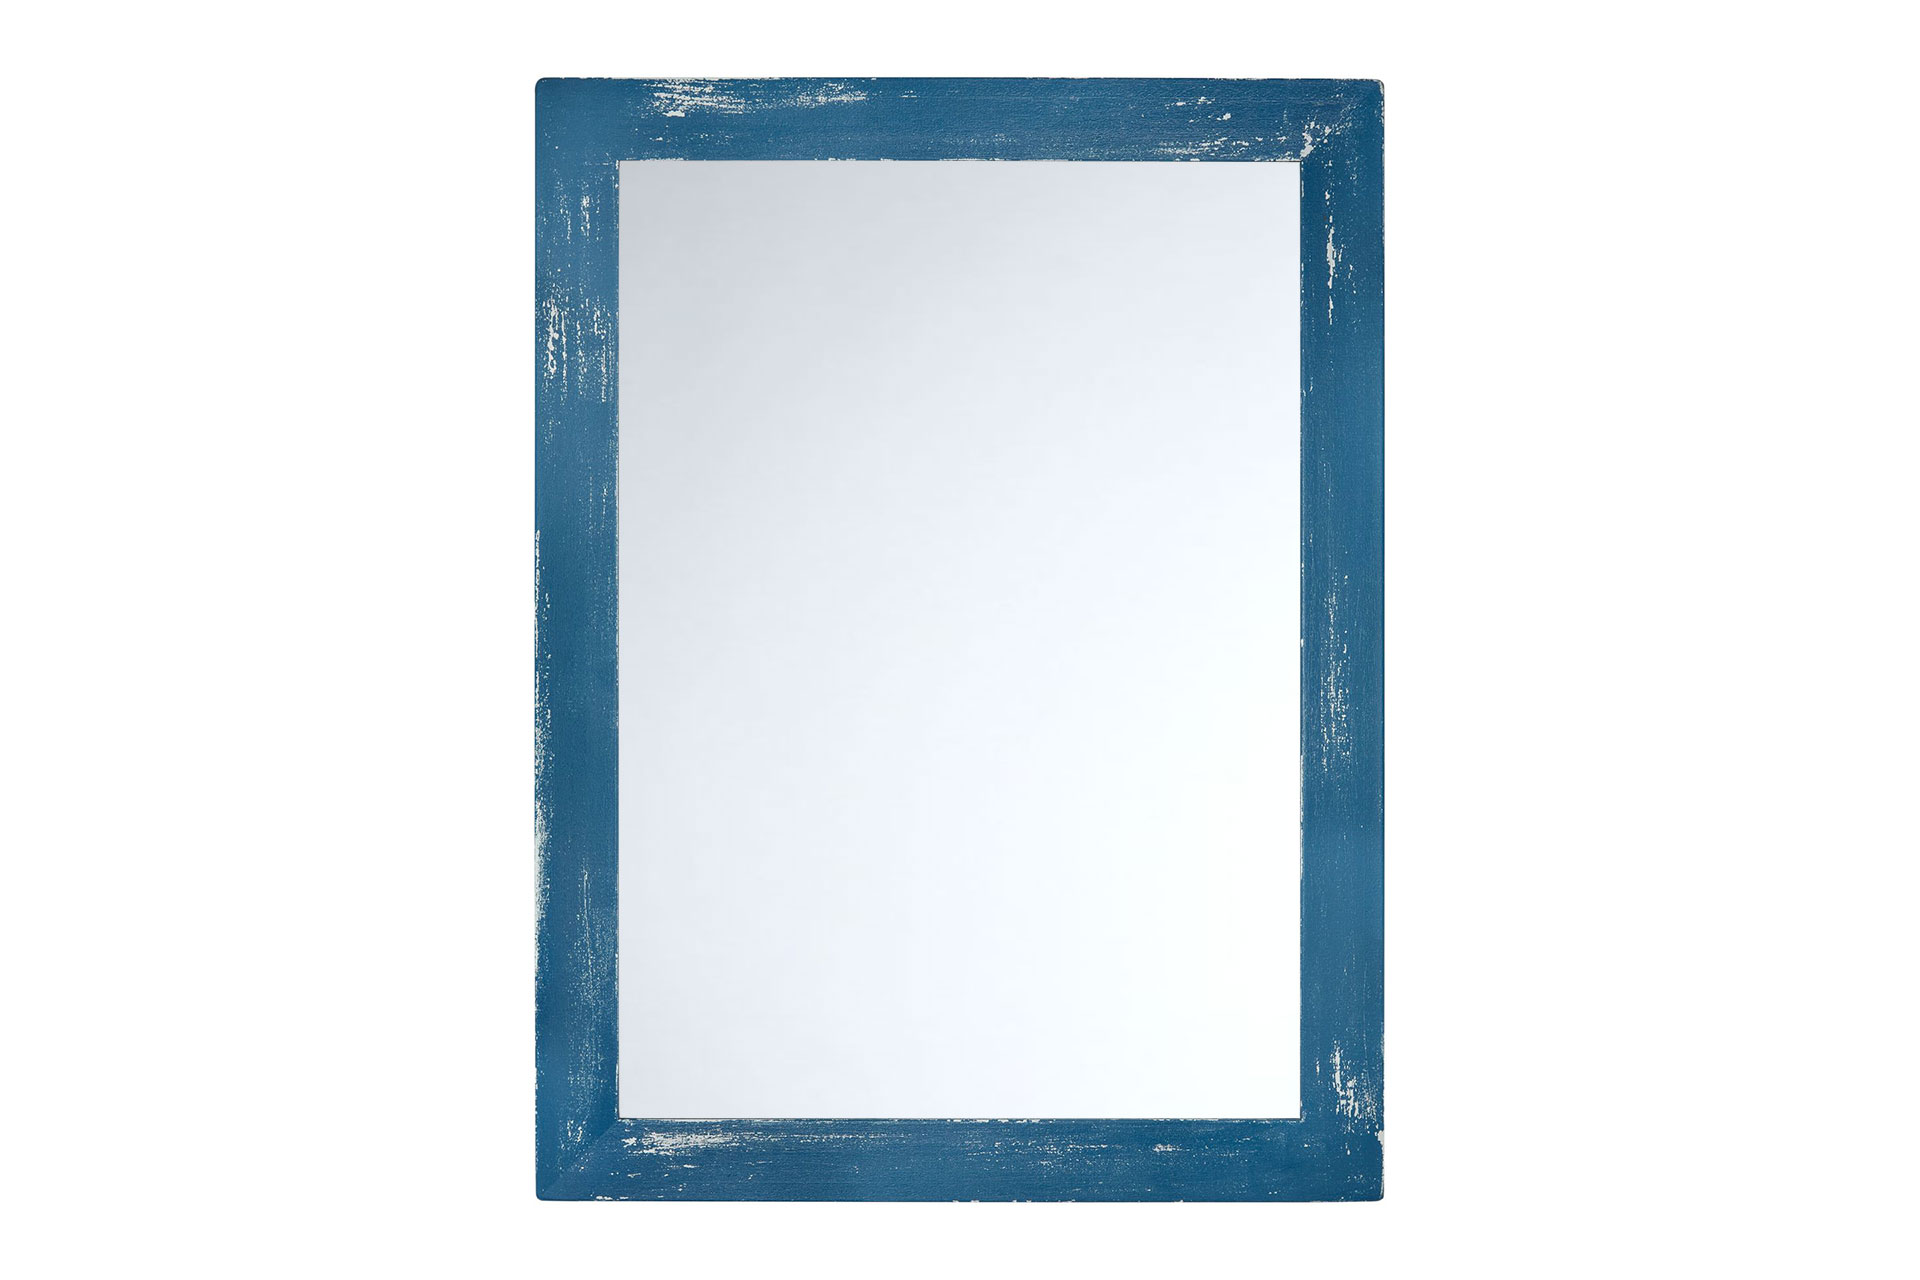 ASR-Rahmendesign Wandspiegel Modell Malta, Azurblau/Lichtgrau, Facettenspiegel, rechteckig, Innenbereich, Shabby-Chic, Ansicht Front mit Spiegel